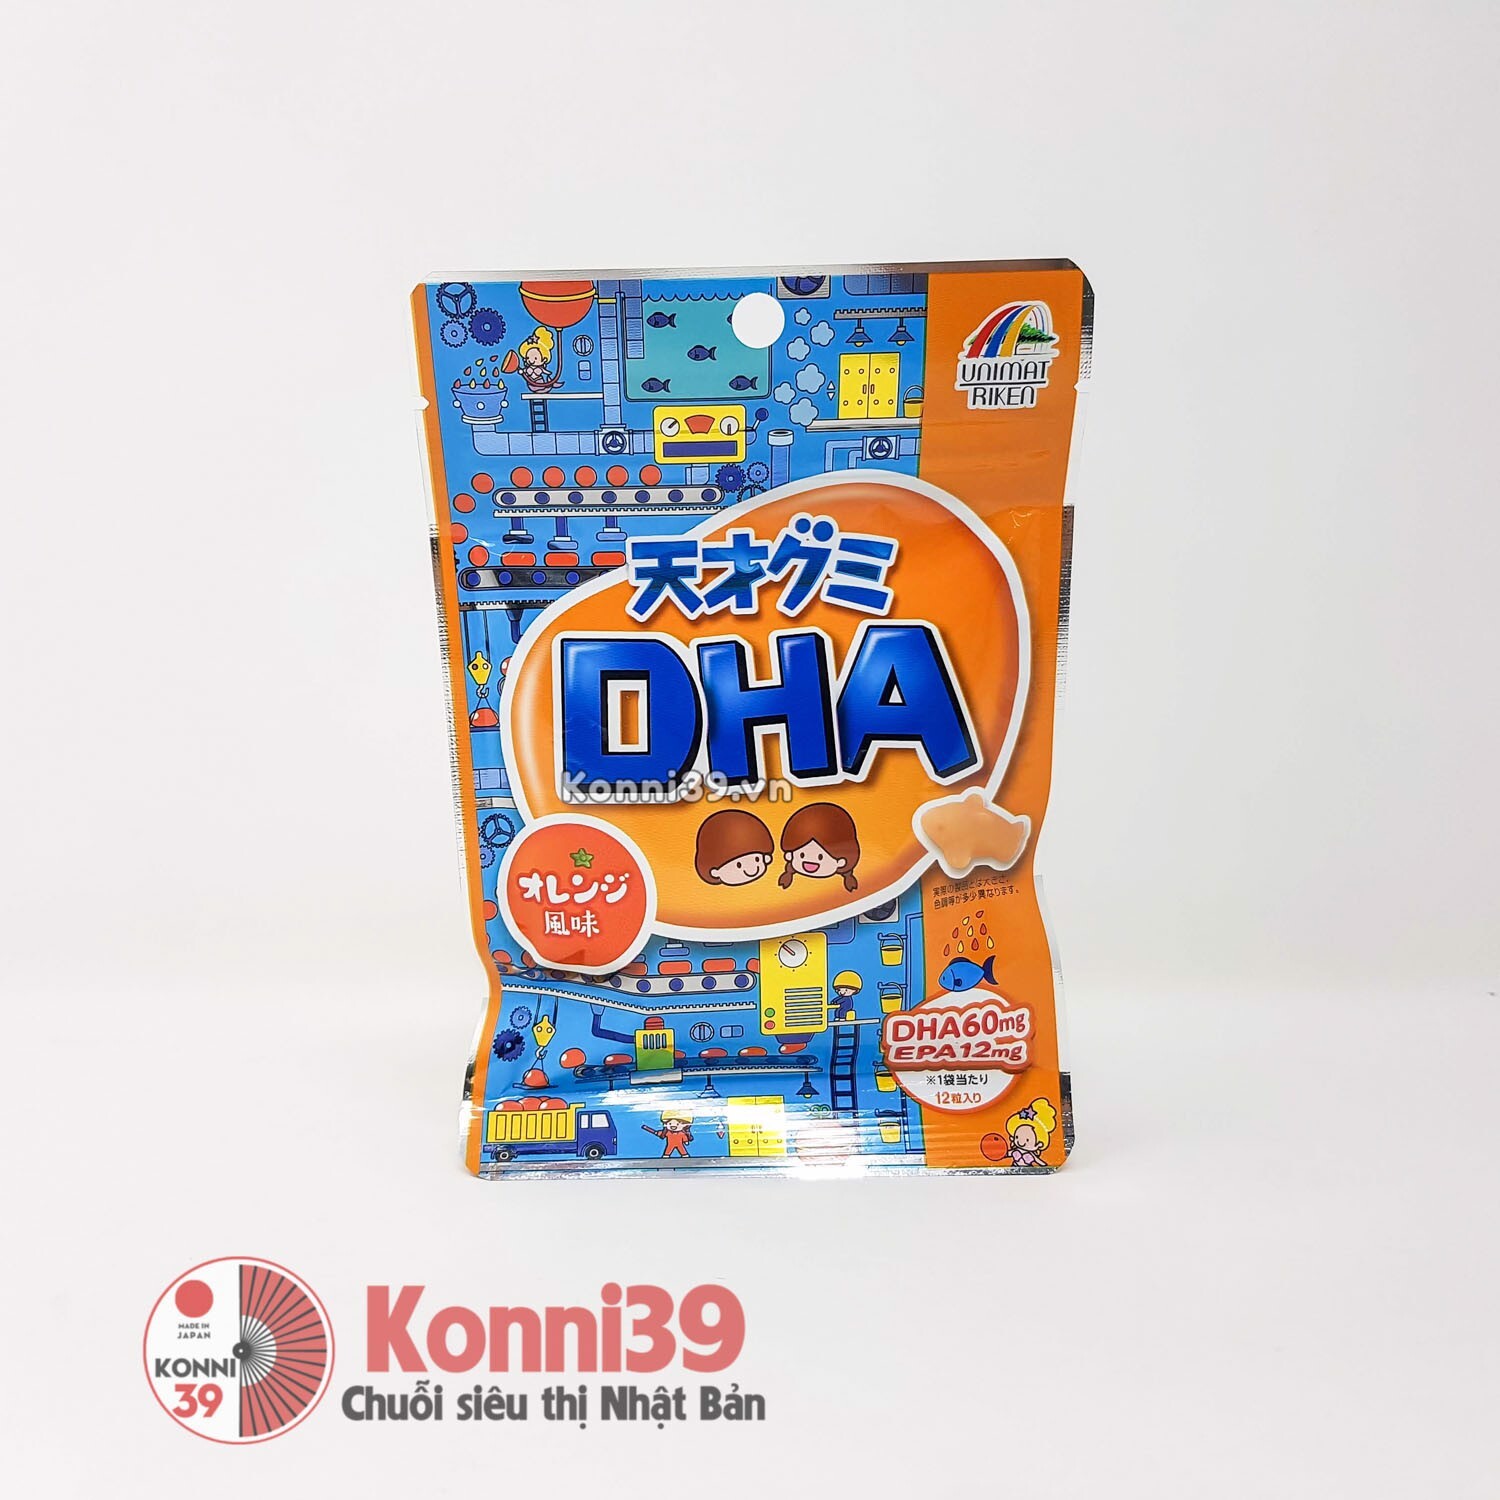 Kẹo dẻo Unimat Riken bổ sung DHA - 42g